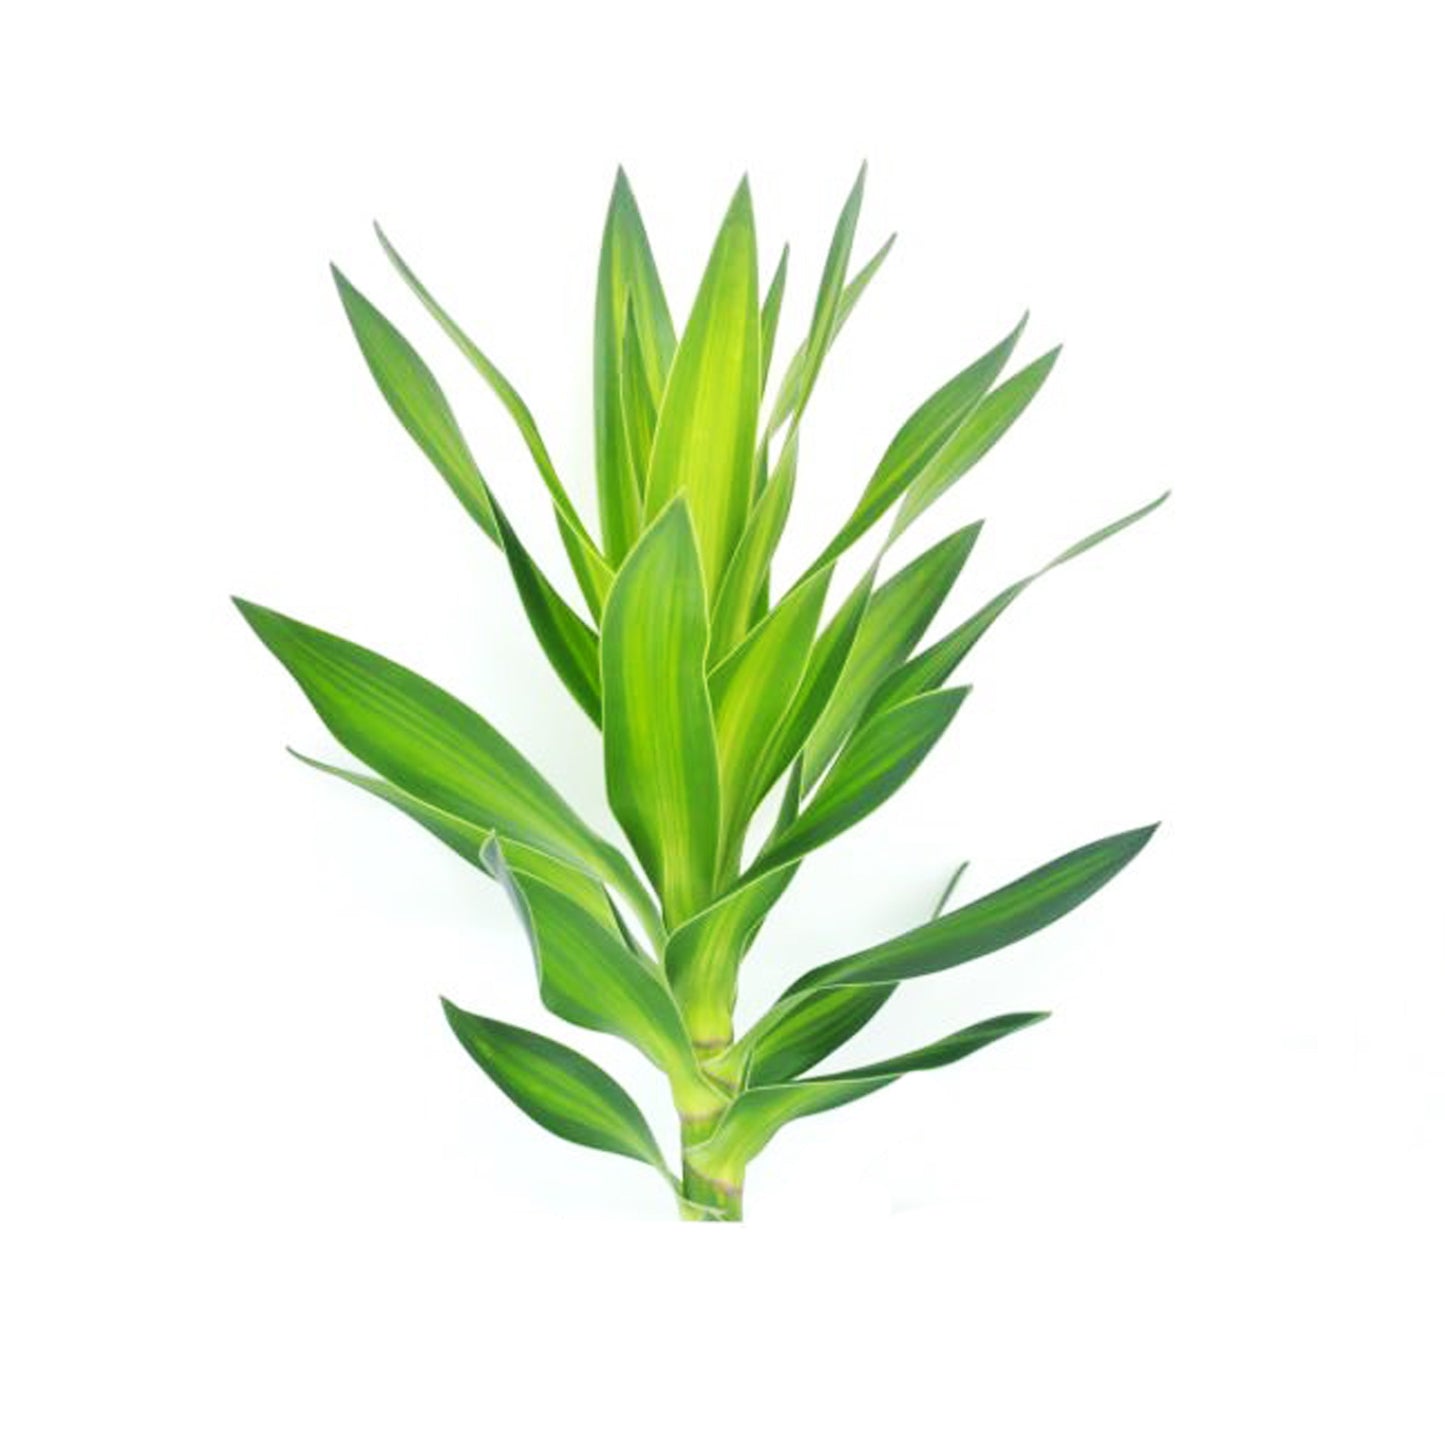 Lakpura Dracaena Reflexa 'зеленая' (50 листьев) средняя